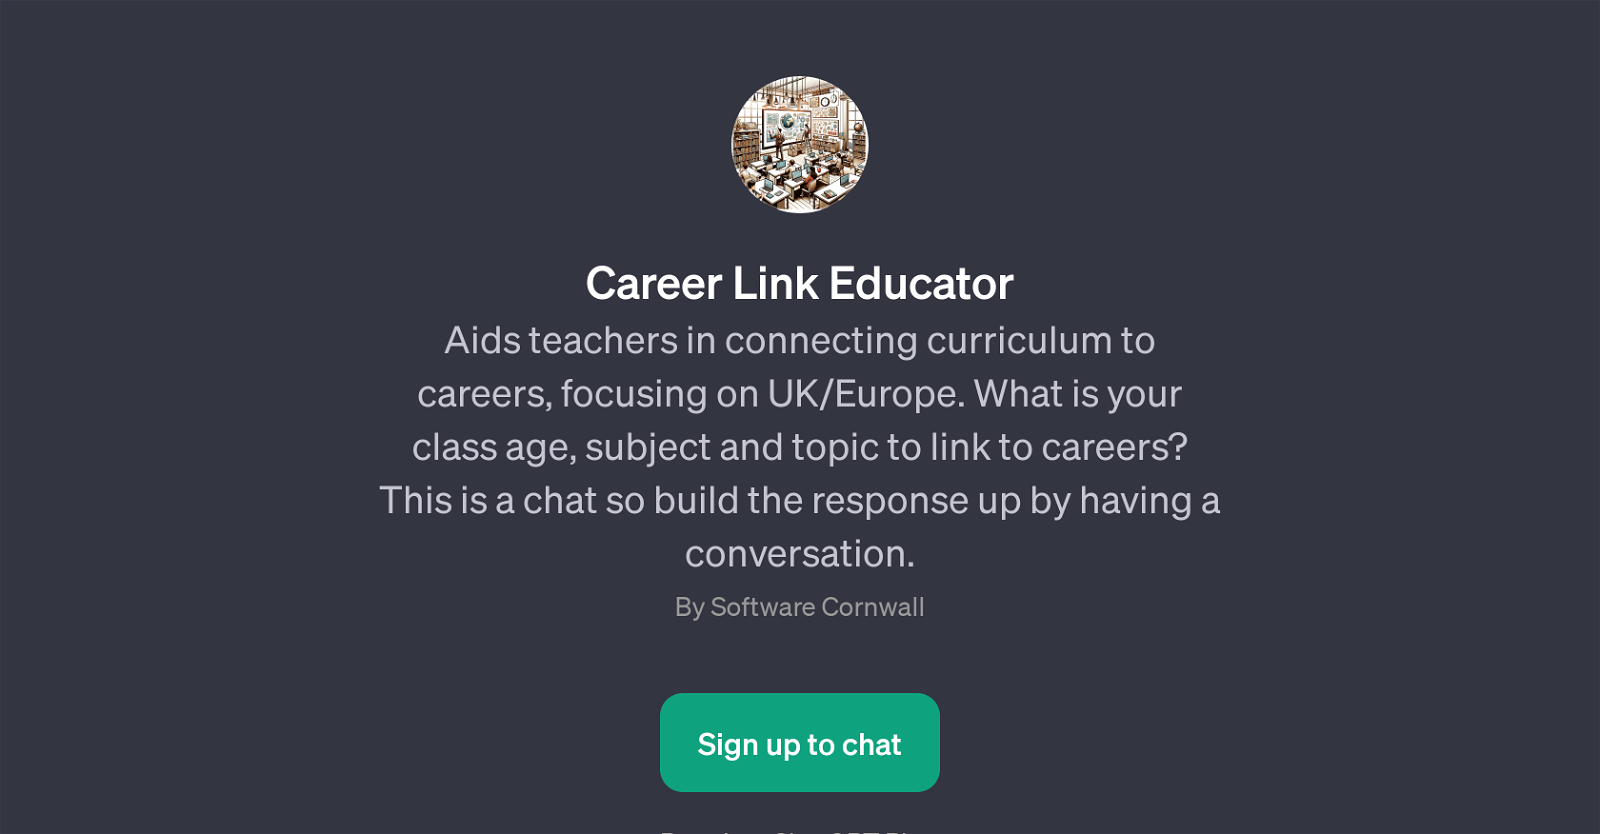 Career Link Educator website